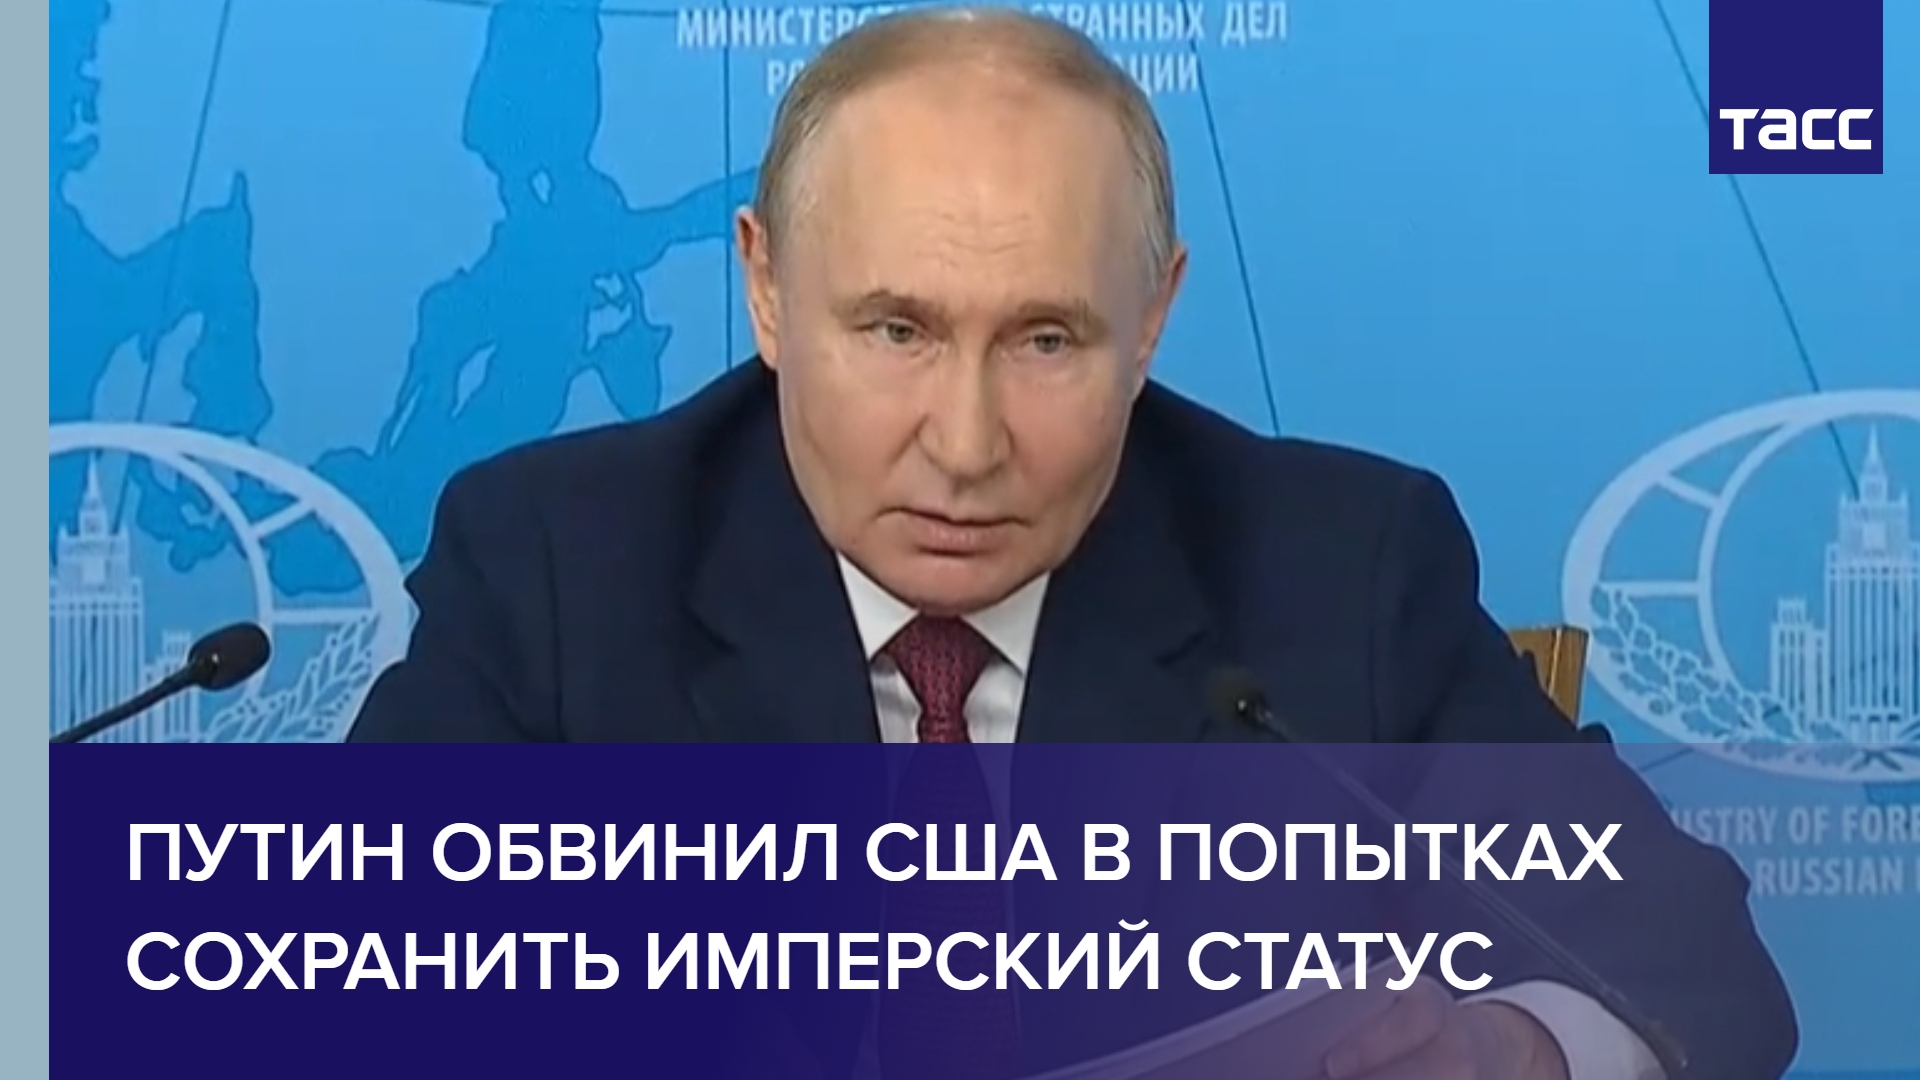 Путин обвинил США в попытках сохранить имперский статус